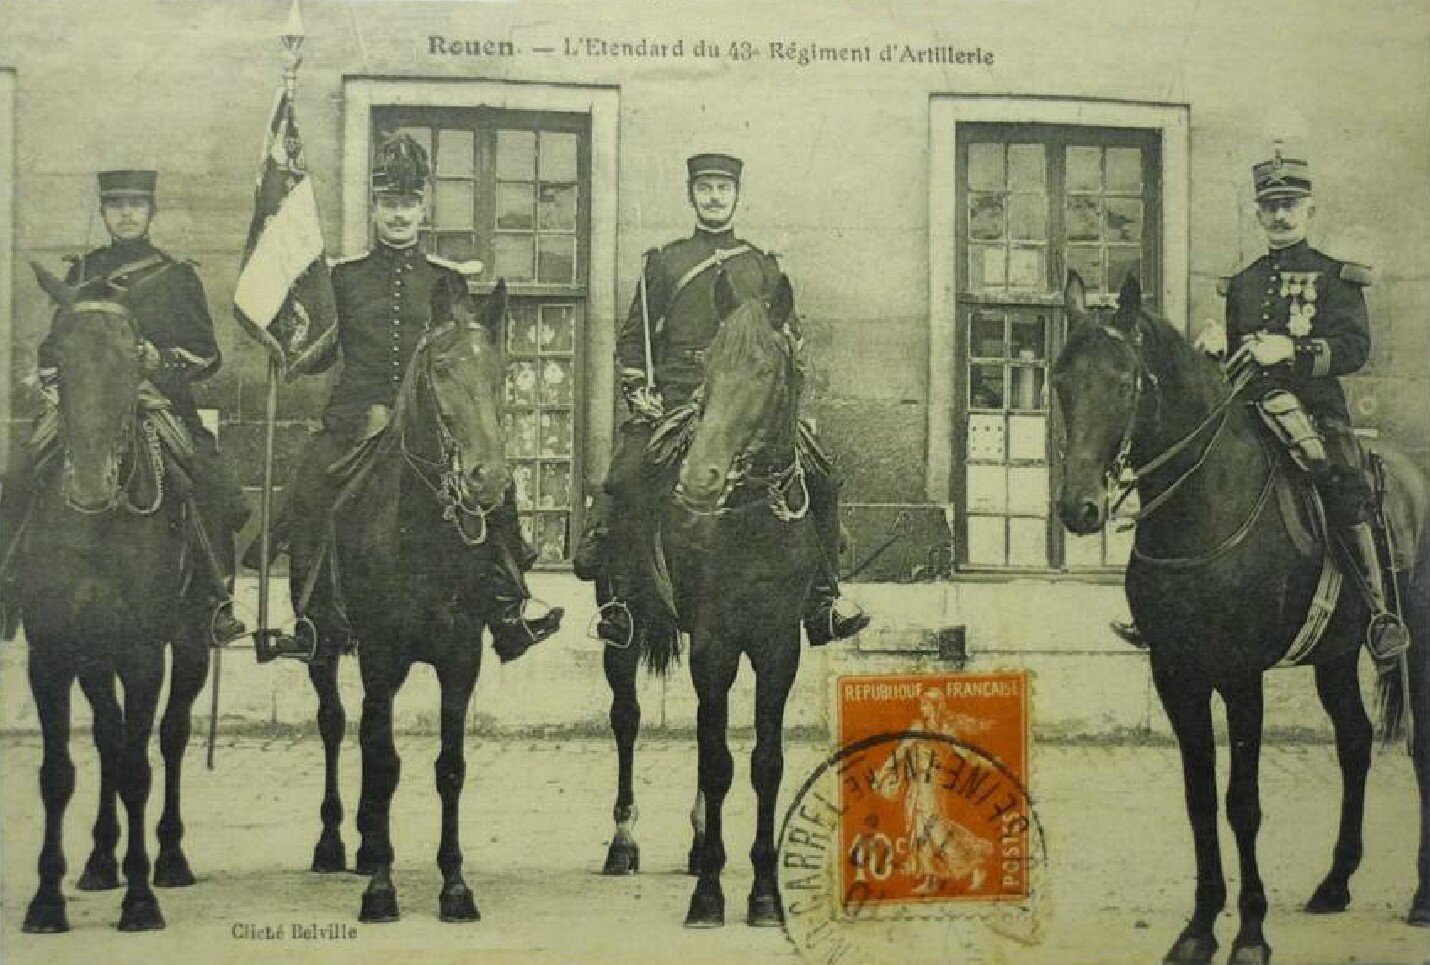 Rouen - L'étendard du 43e Régiment d'artillerie (carte postale coll. Verney-gandeguerre)